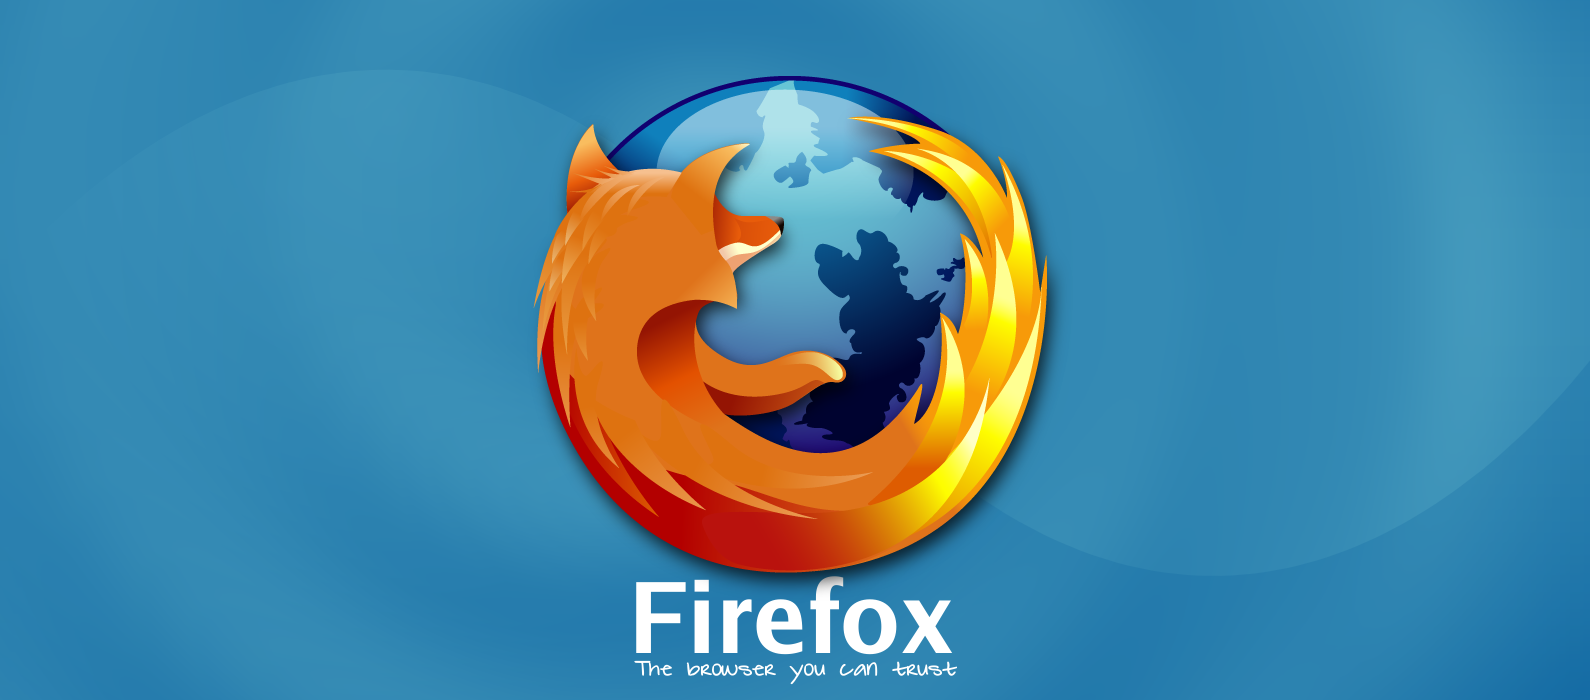 Internet: Navegador con Conexiones Seguras, Firefox Web Security